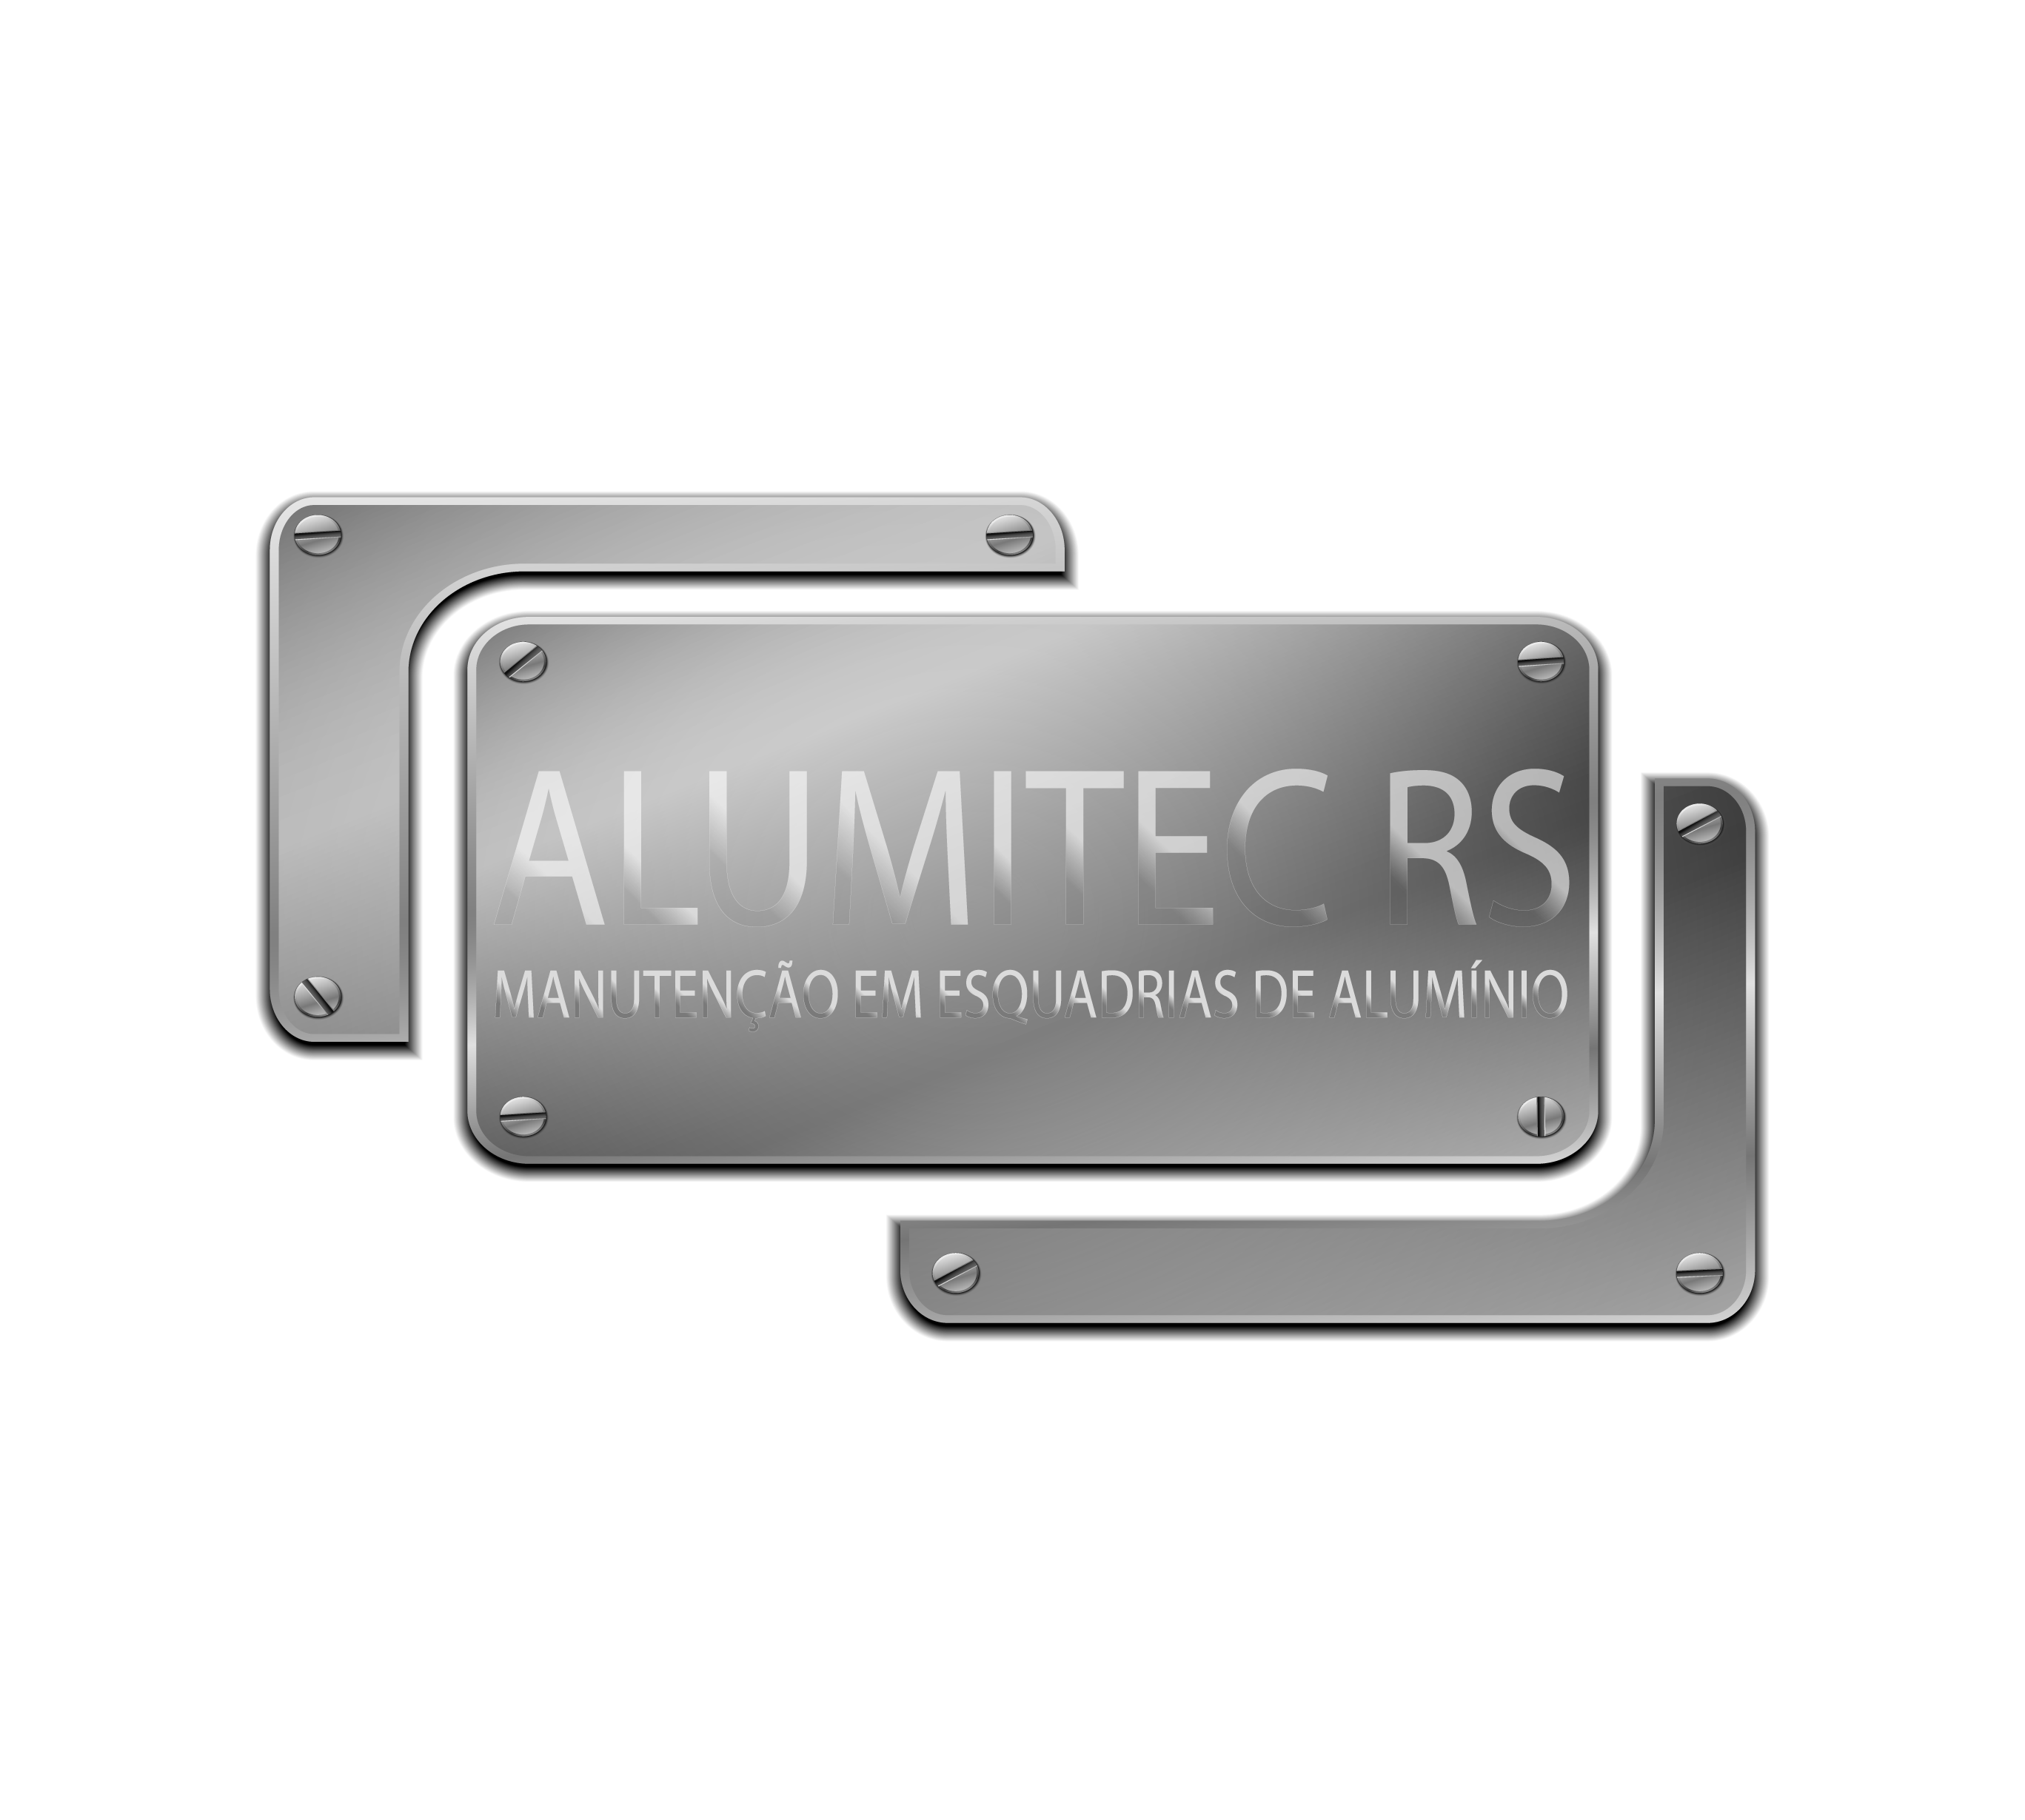 Alumitec RS